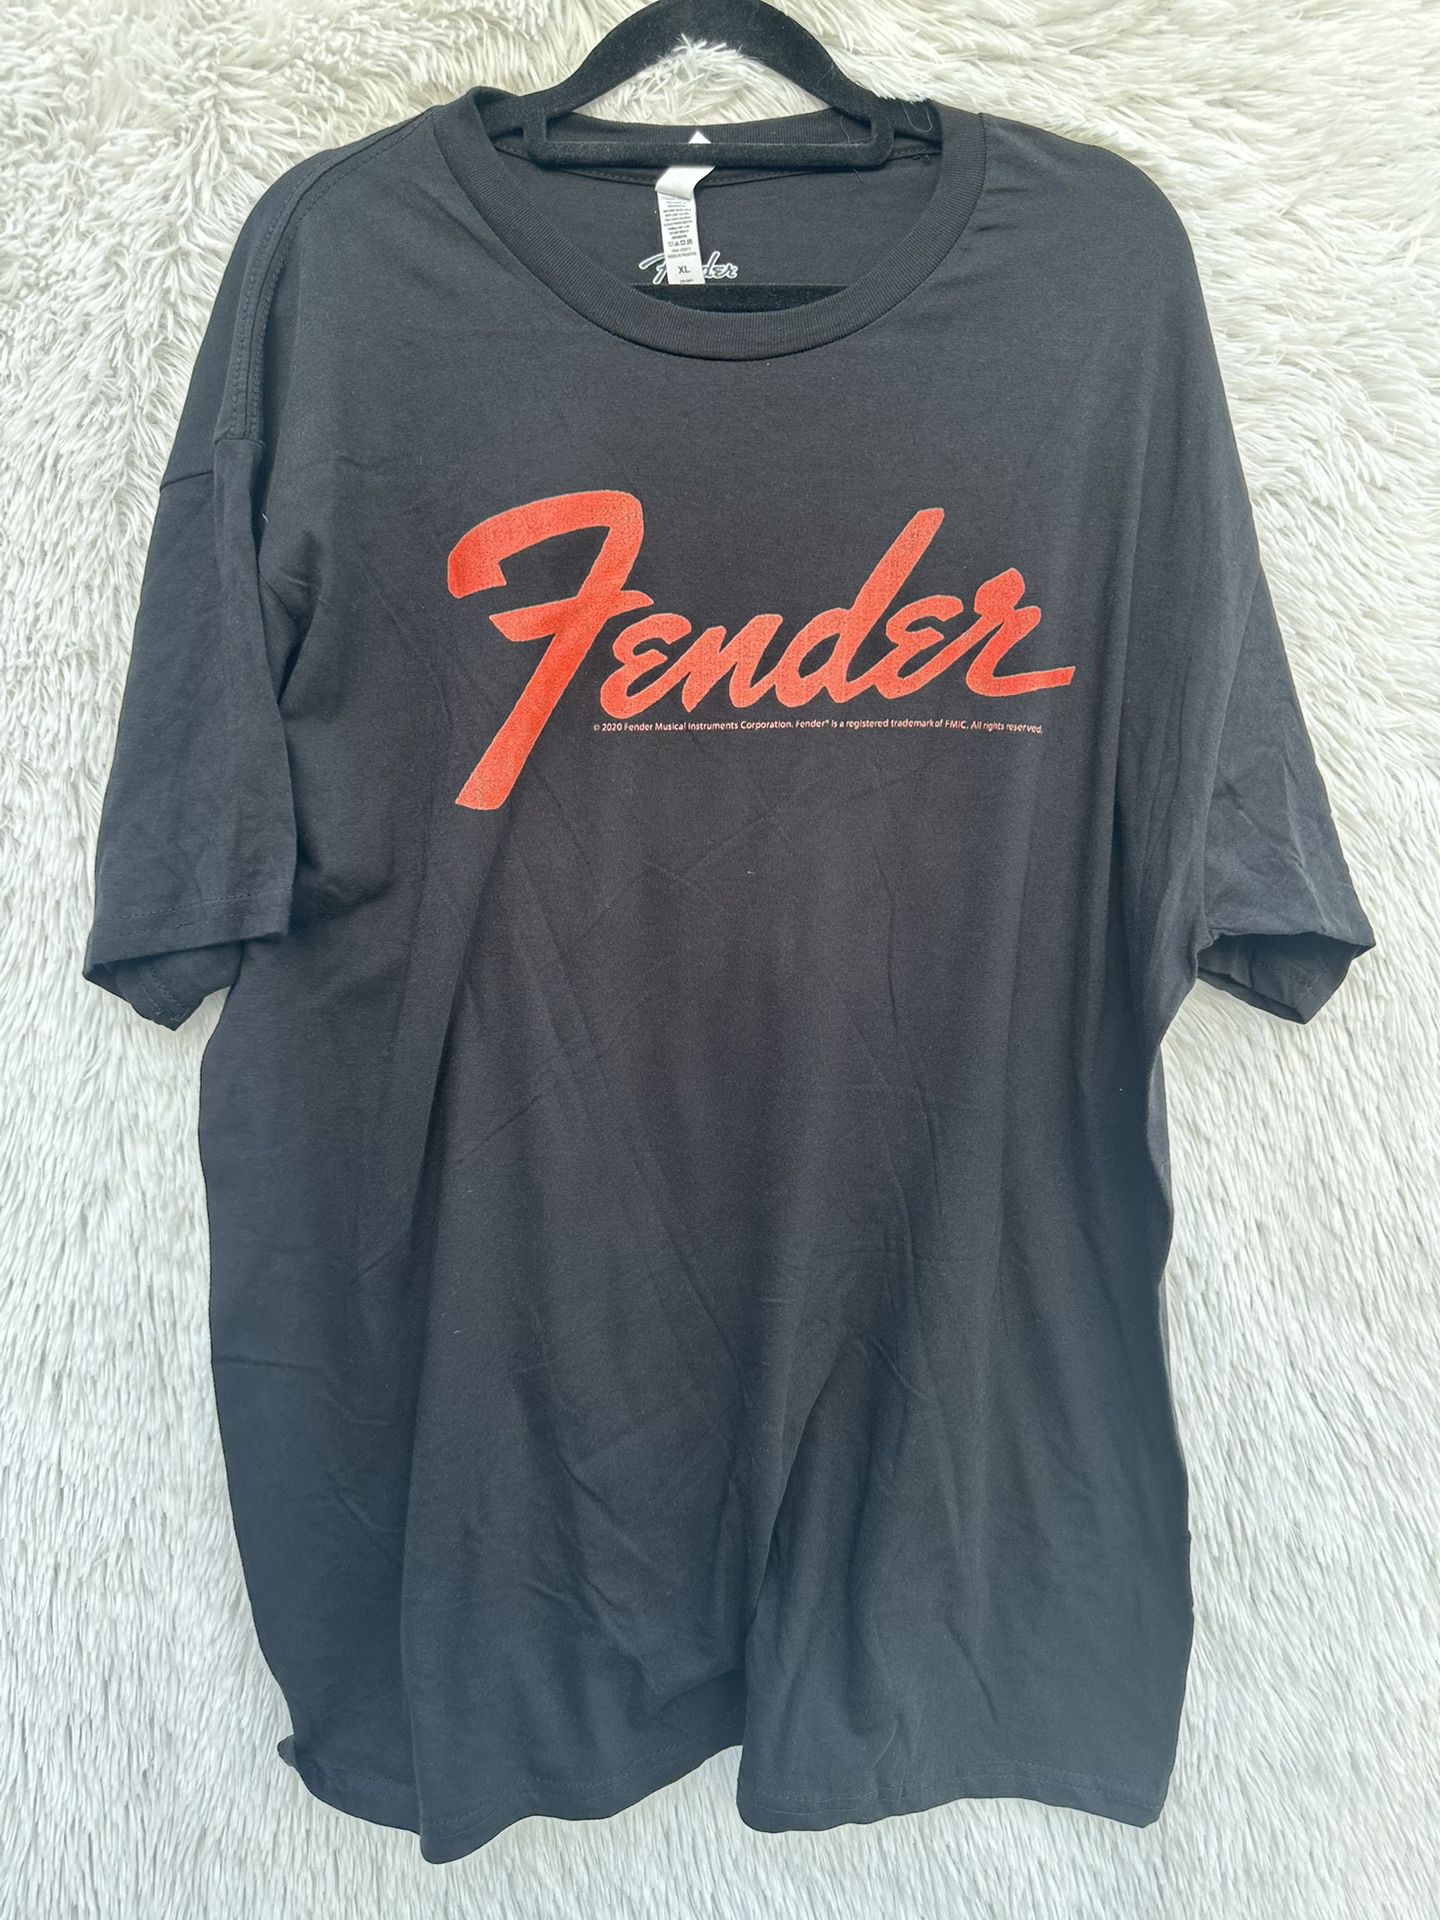 New Men Fender Shirt Sleeve Shirt Size XL